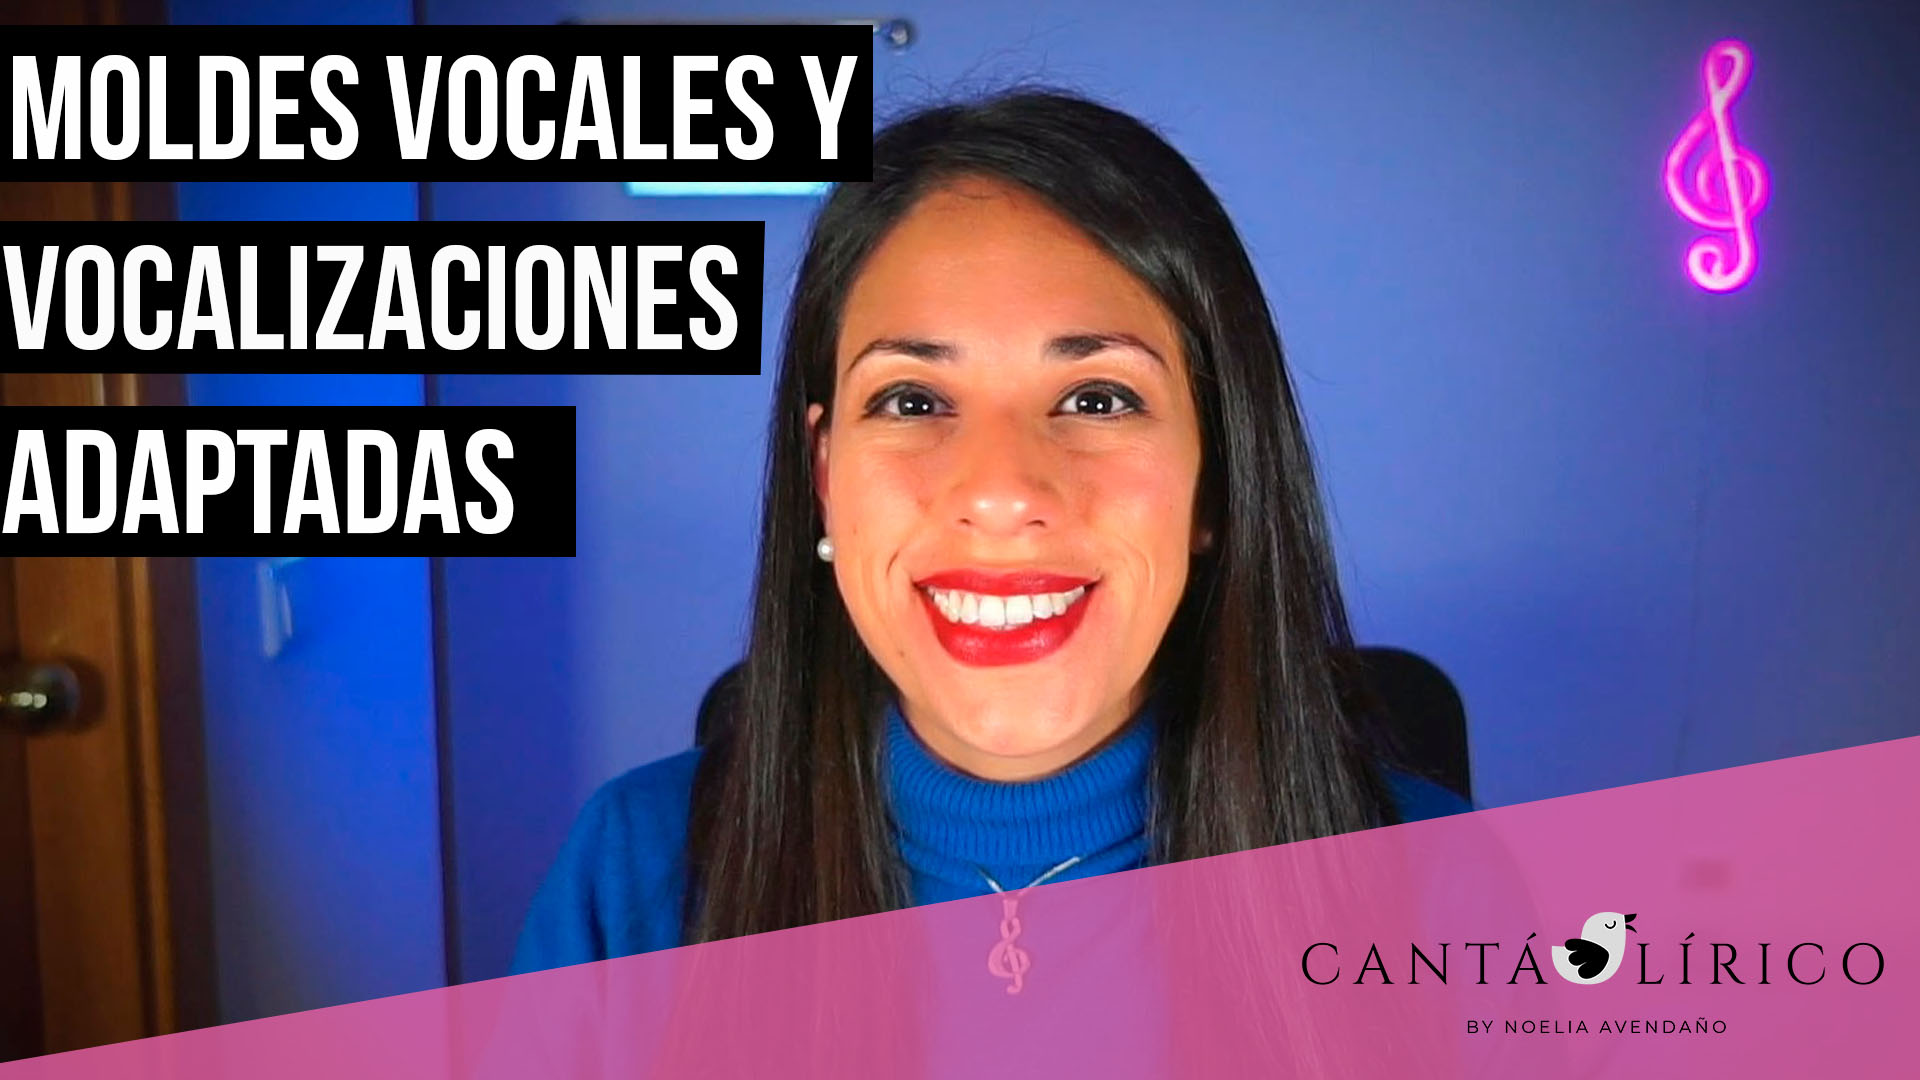 Módulo 4 – Moldes Vocales y Vocalizaciones adaptadas al tipo de Voz